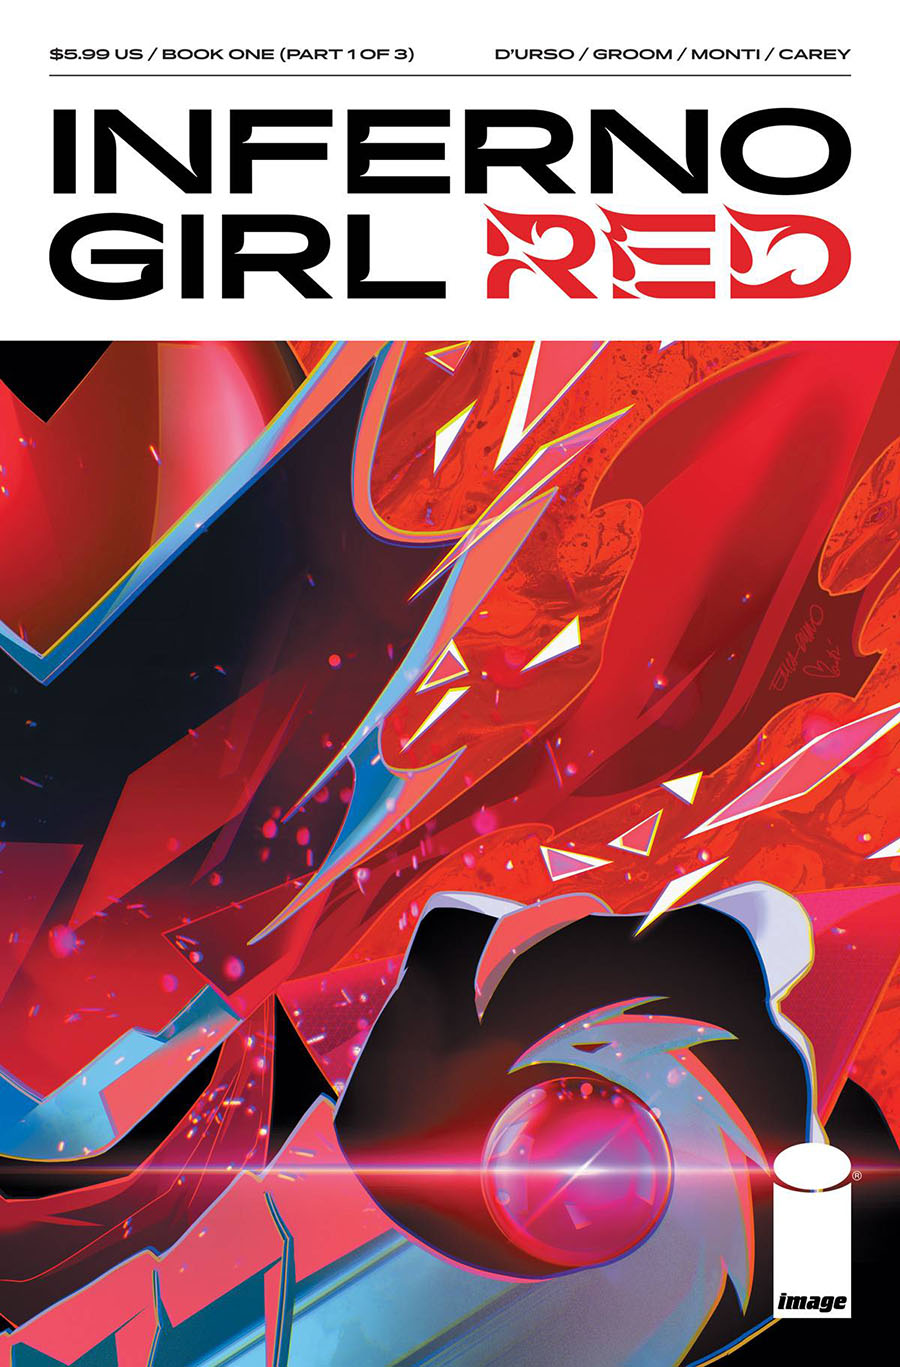 Inferno Girl Red Book 1 #1 Cover A Regular Erica DUrso & Igor Monti Cover